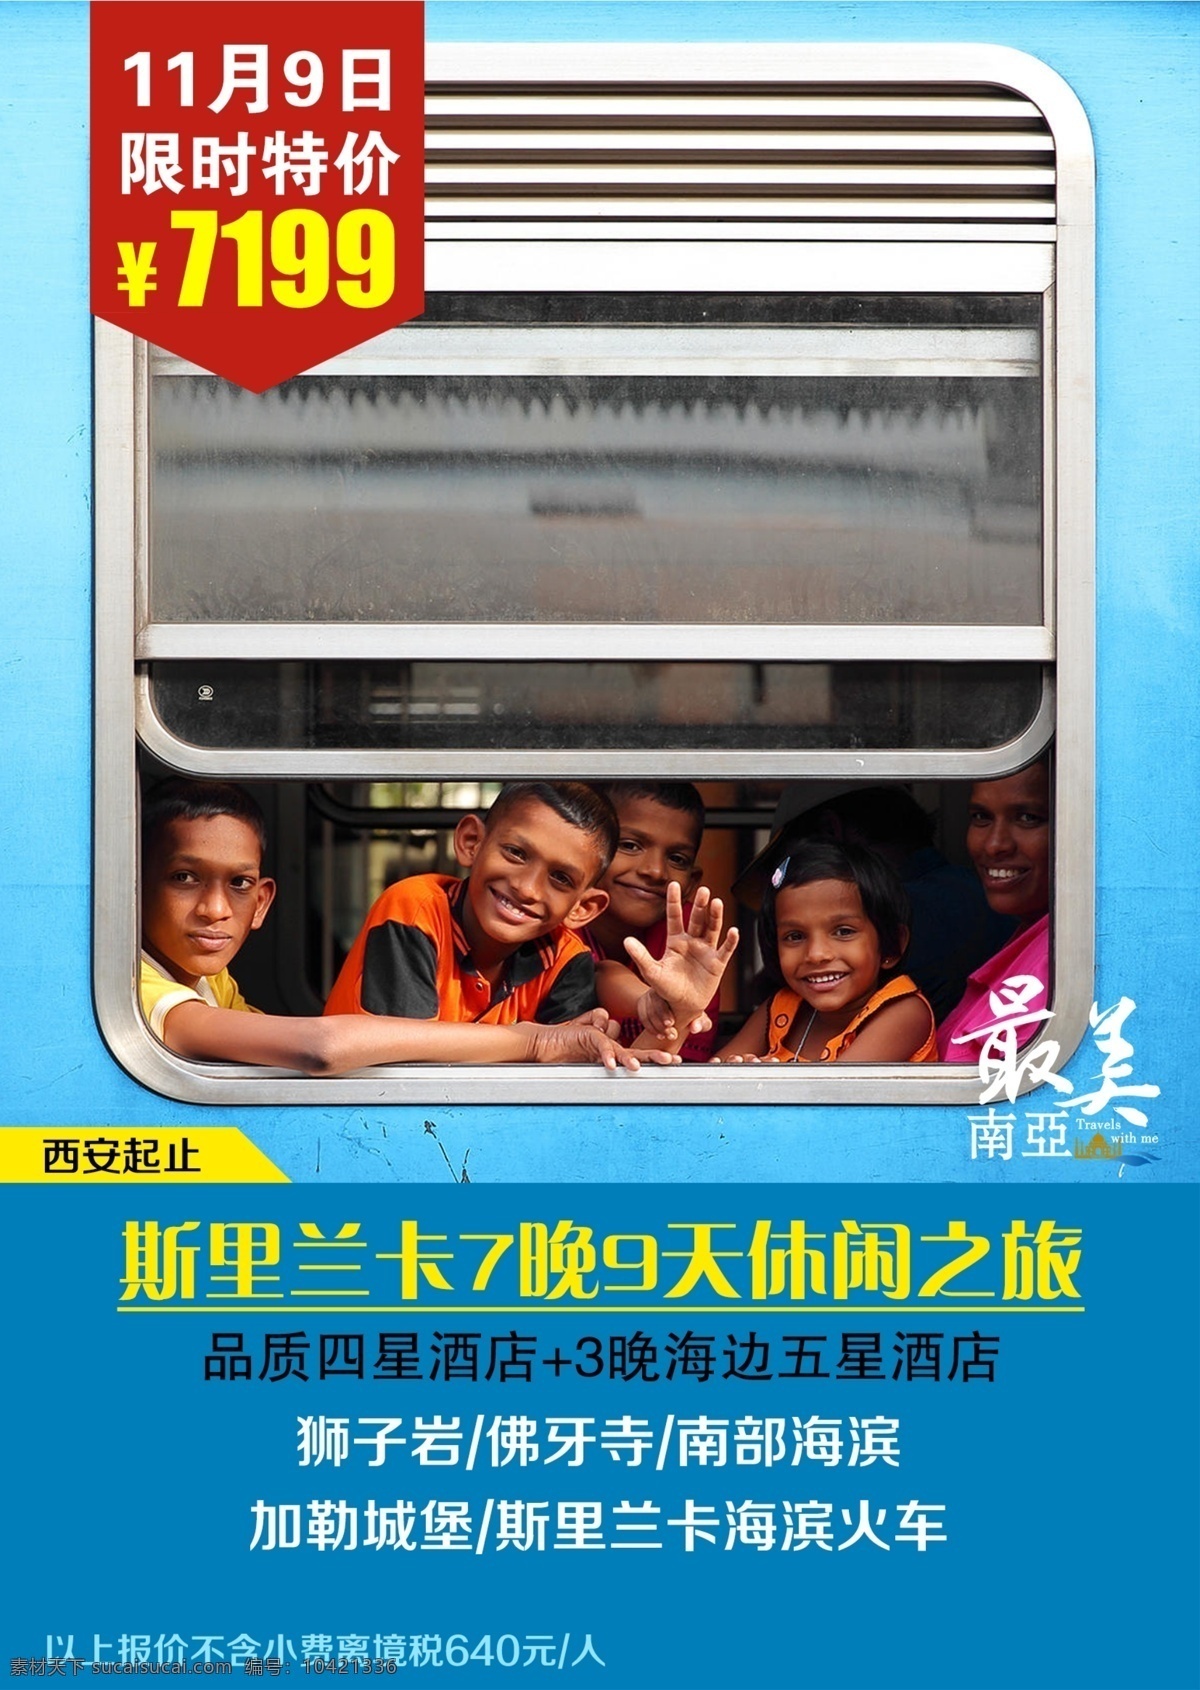 斯里兰卡 旅游 宣传海报 斯里兰卡旅游 旅游海报 小火车 车窗 儿童 微笑 旅游微信宣传